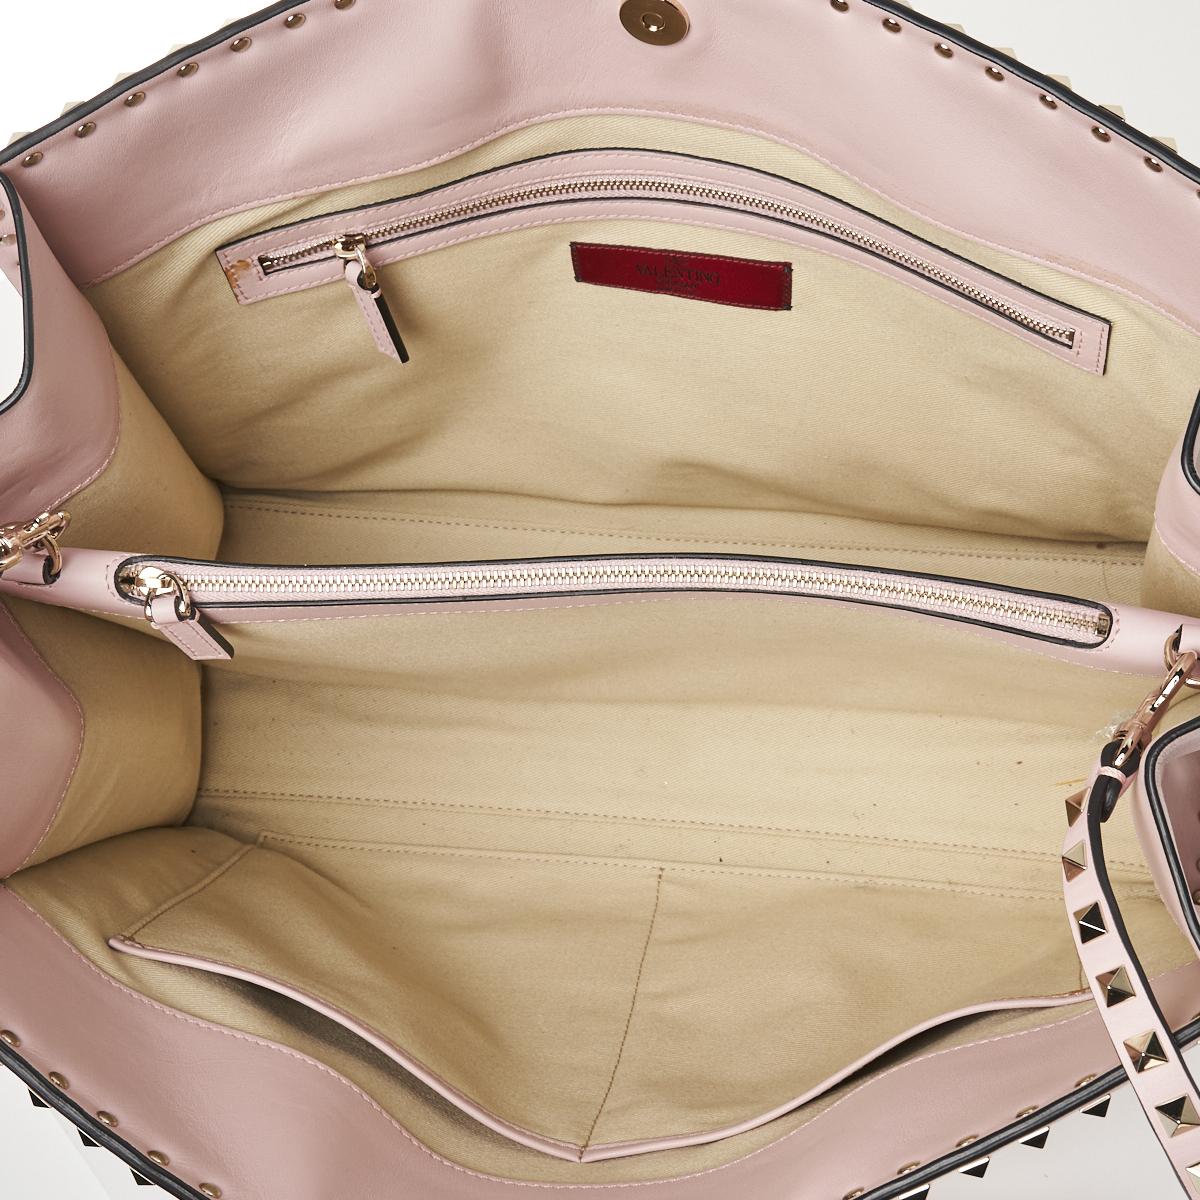 Valentino Rockstud Convertible Tote Bag - Price Estimate: $800 - $1200